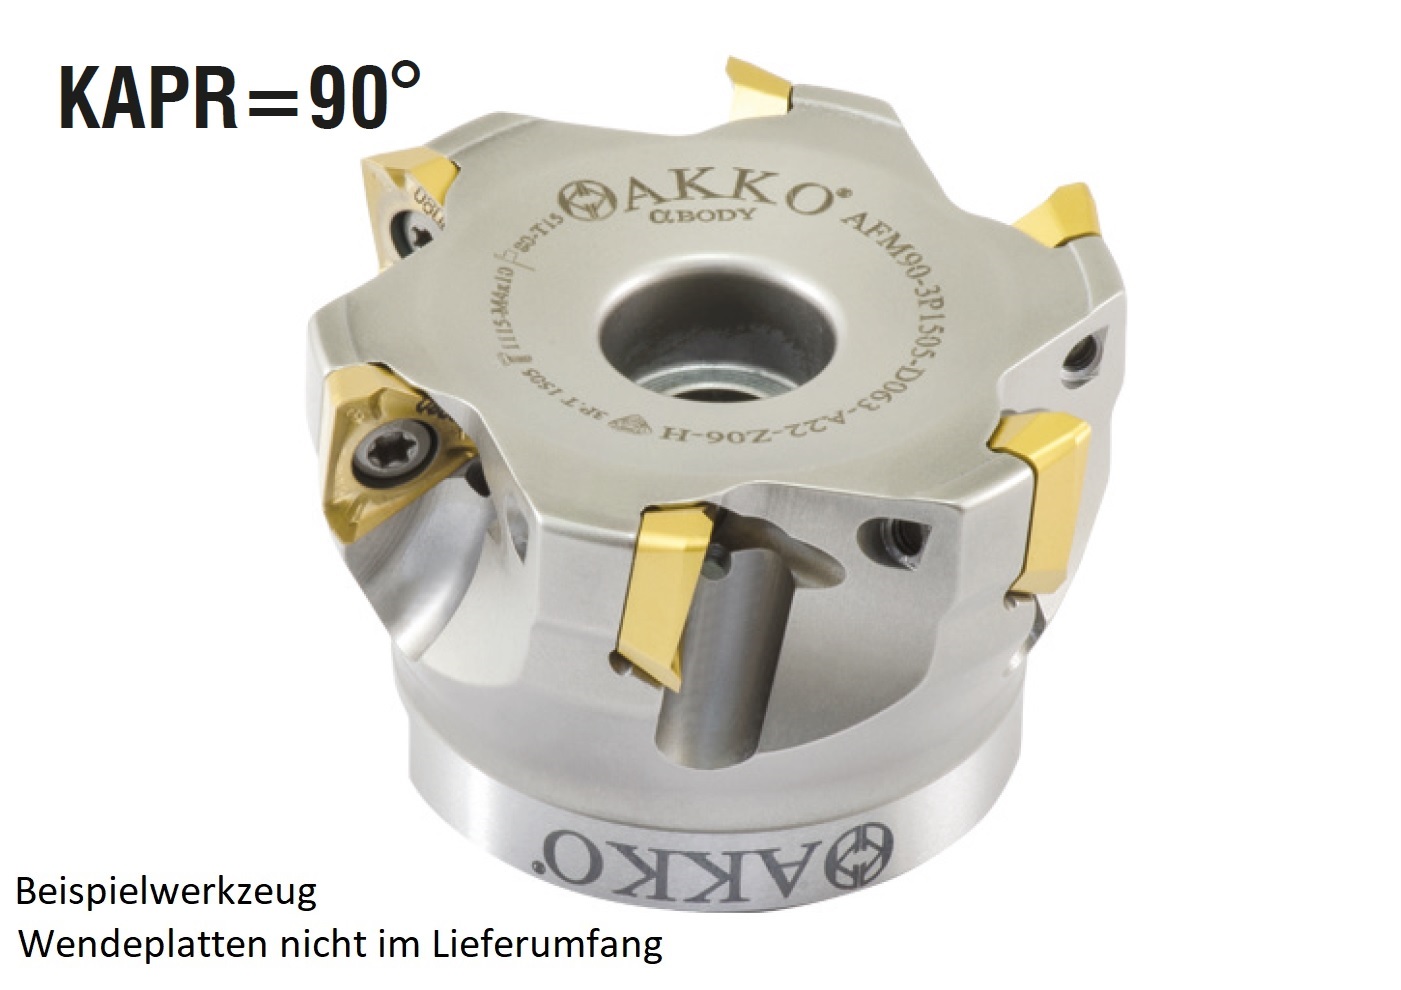 AKKO-Eckmesserkopf ø 80 mm, 90° Anstellwinkel, kompatibel mit Taegutec 3PKT 1505..
Schaft-Ausführung ø 27 mm (Typ A), mit Innenkühlung, Z=7